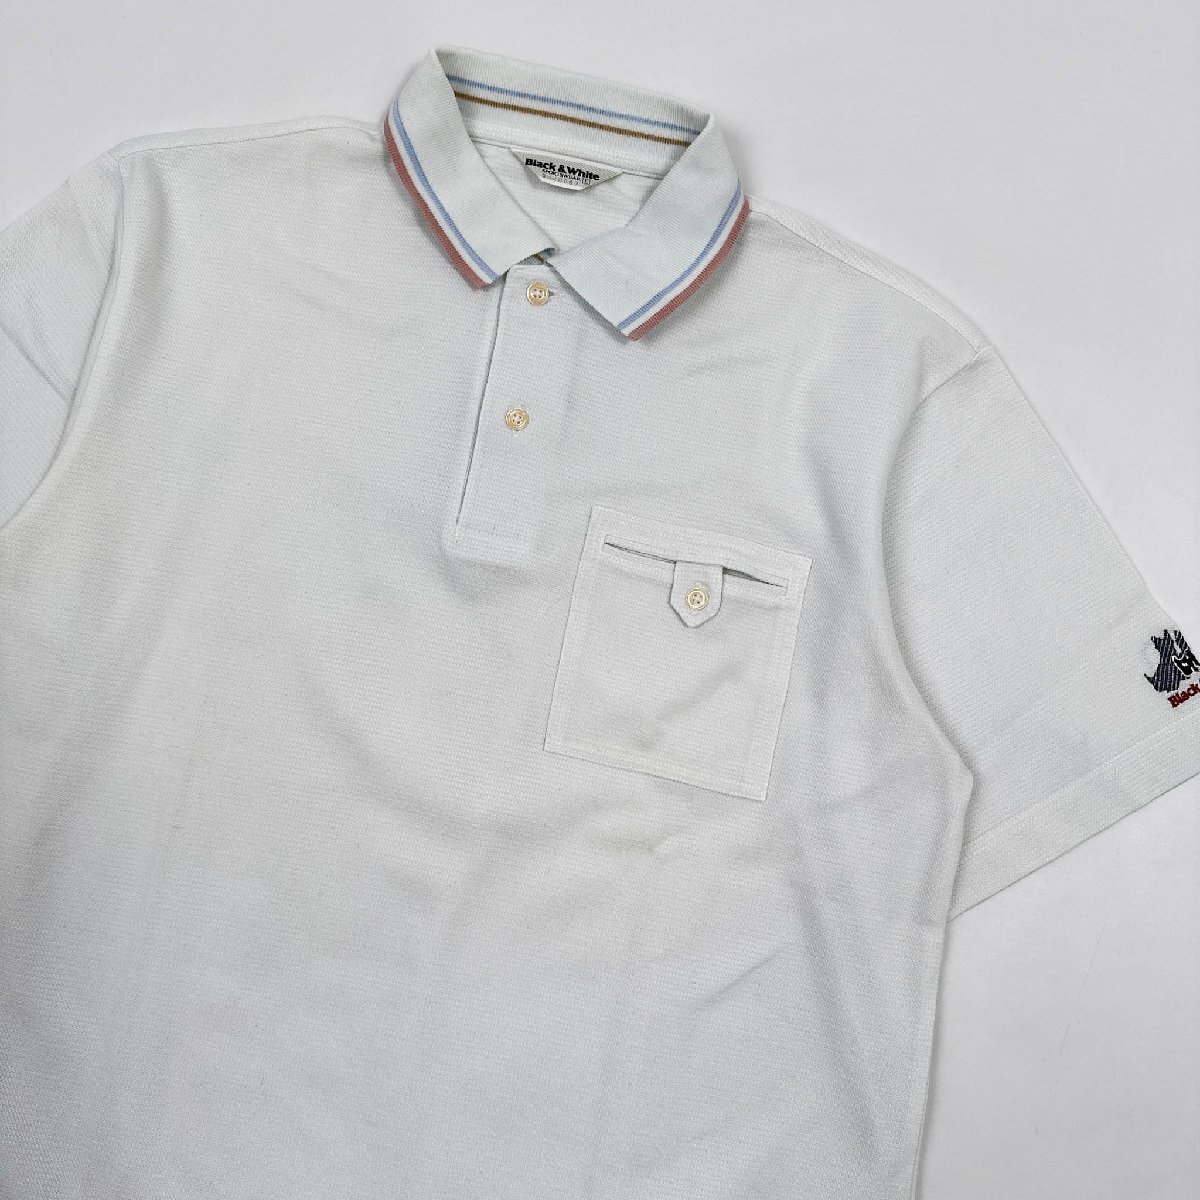  Golf *Black&White черный & белый рукав Logo вышивка с карманом рубашка-поло с коротким рукавом L / мужской спортивный бюстгальтер ho wa/ незначительный бледно-голубой серия 